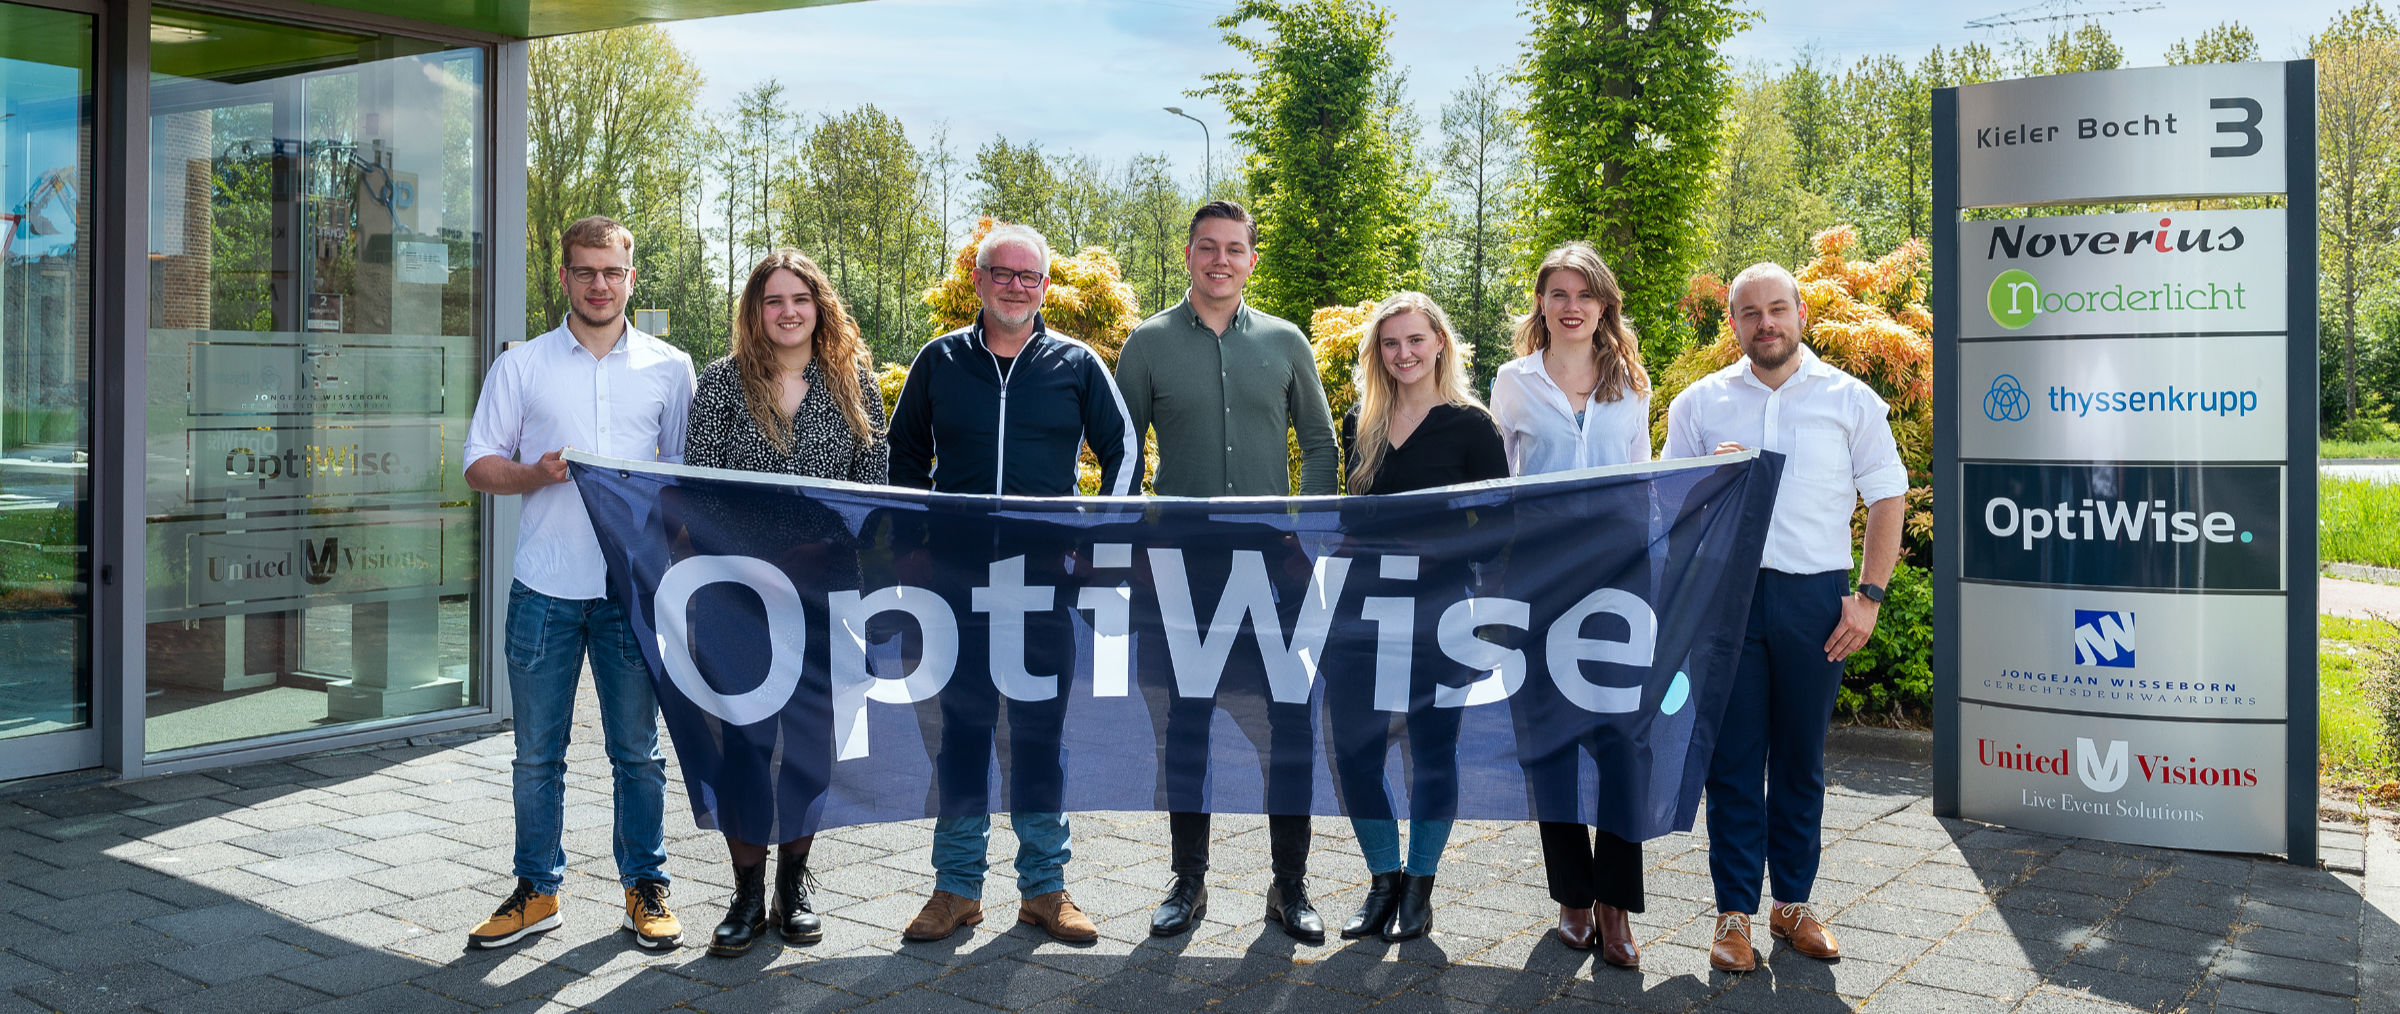 Team OptiWise